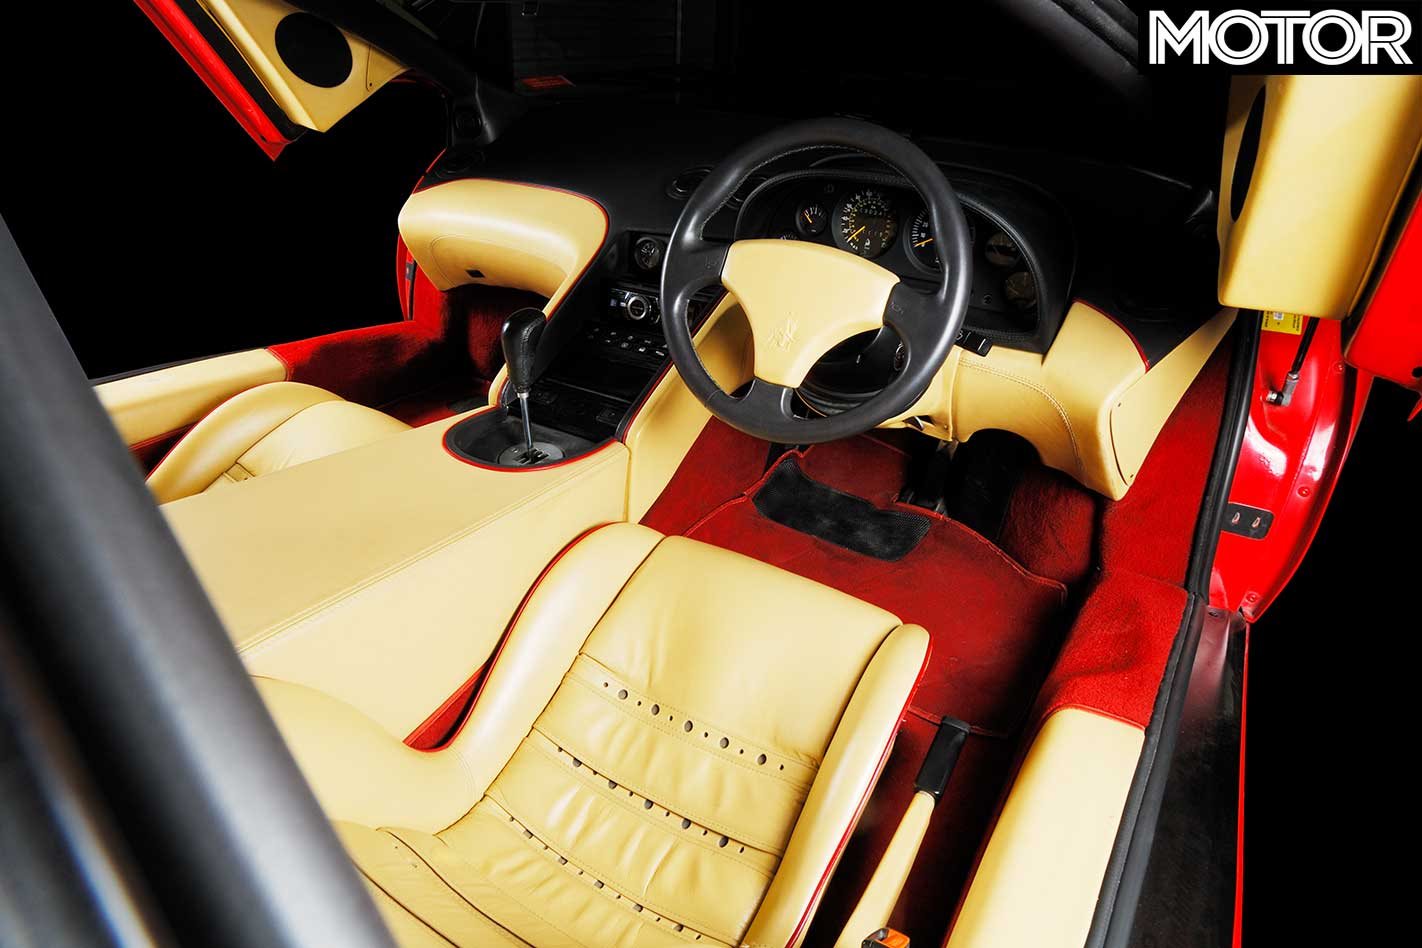 1990 Lamborghini Diablo Legend Series